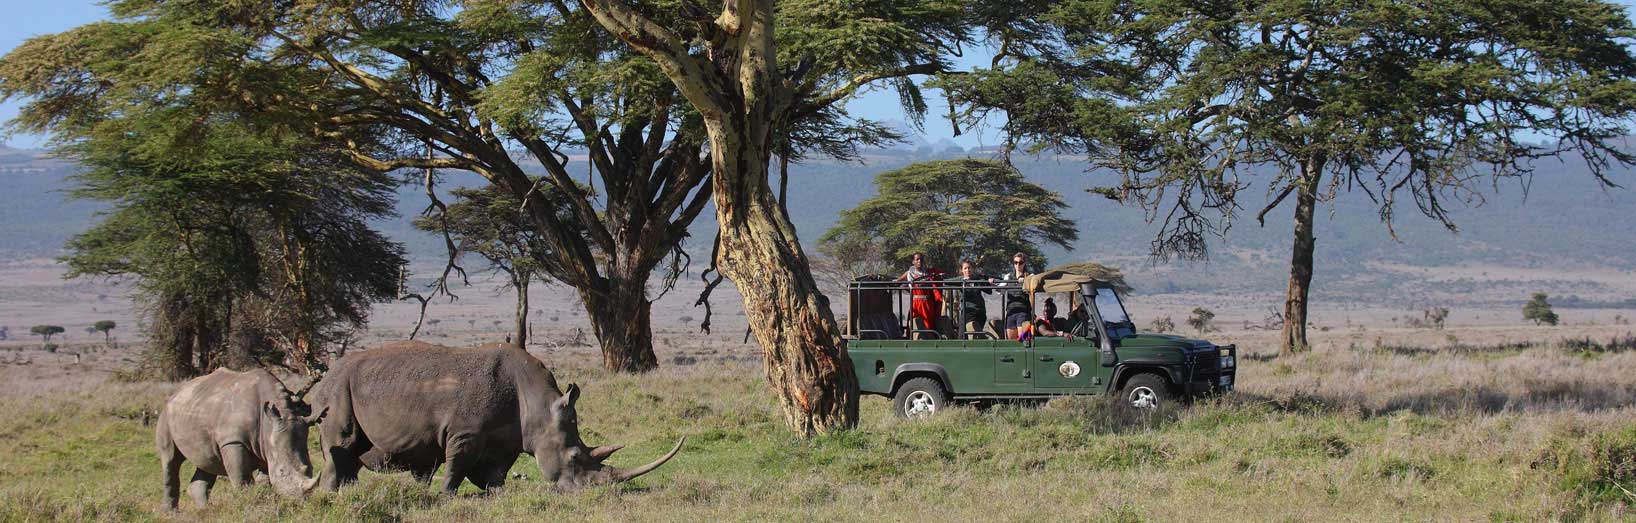 Luxury safaris in Kenya.jpg